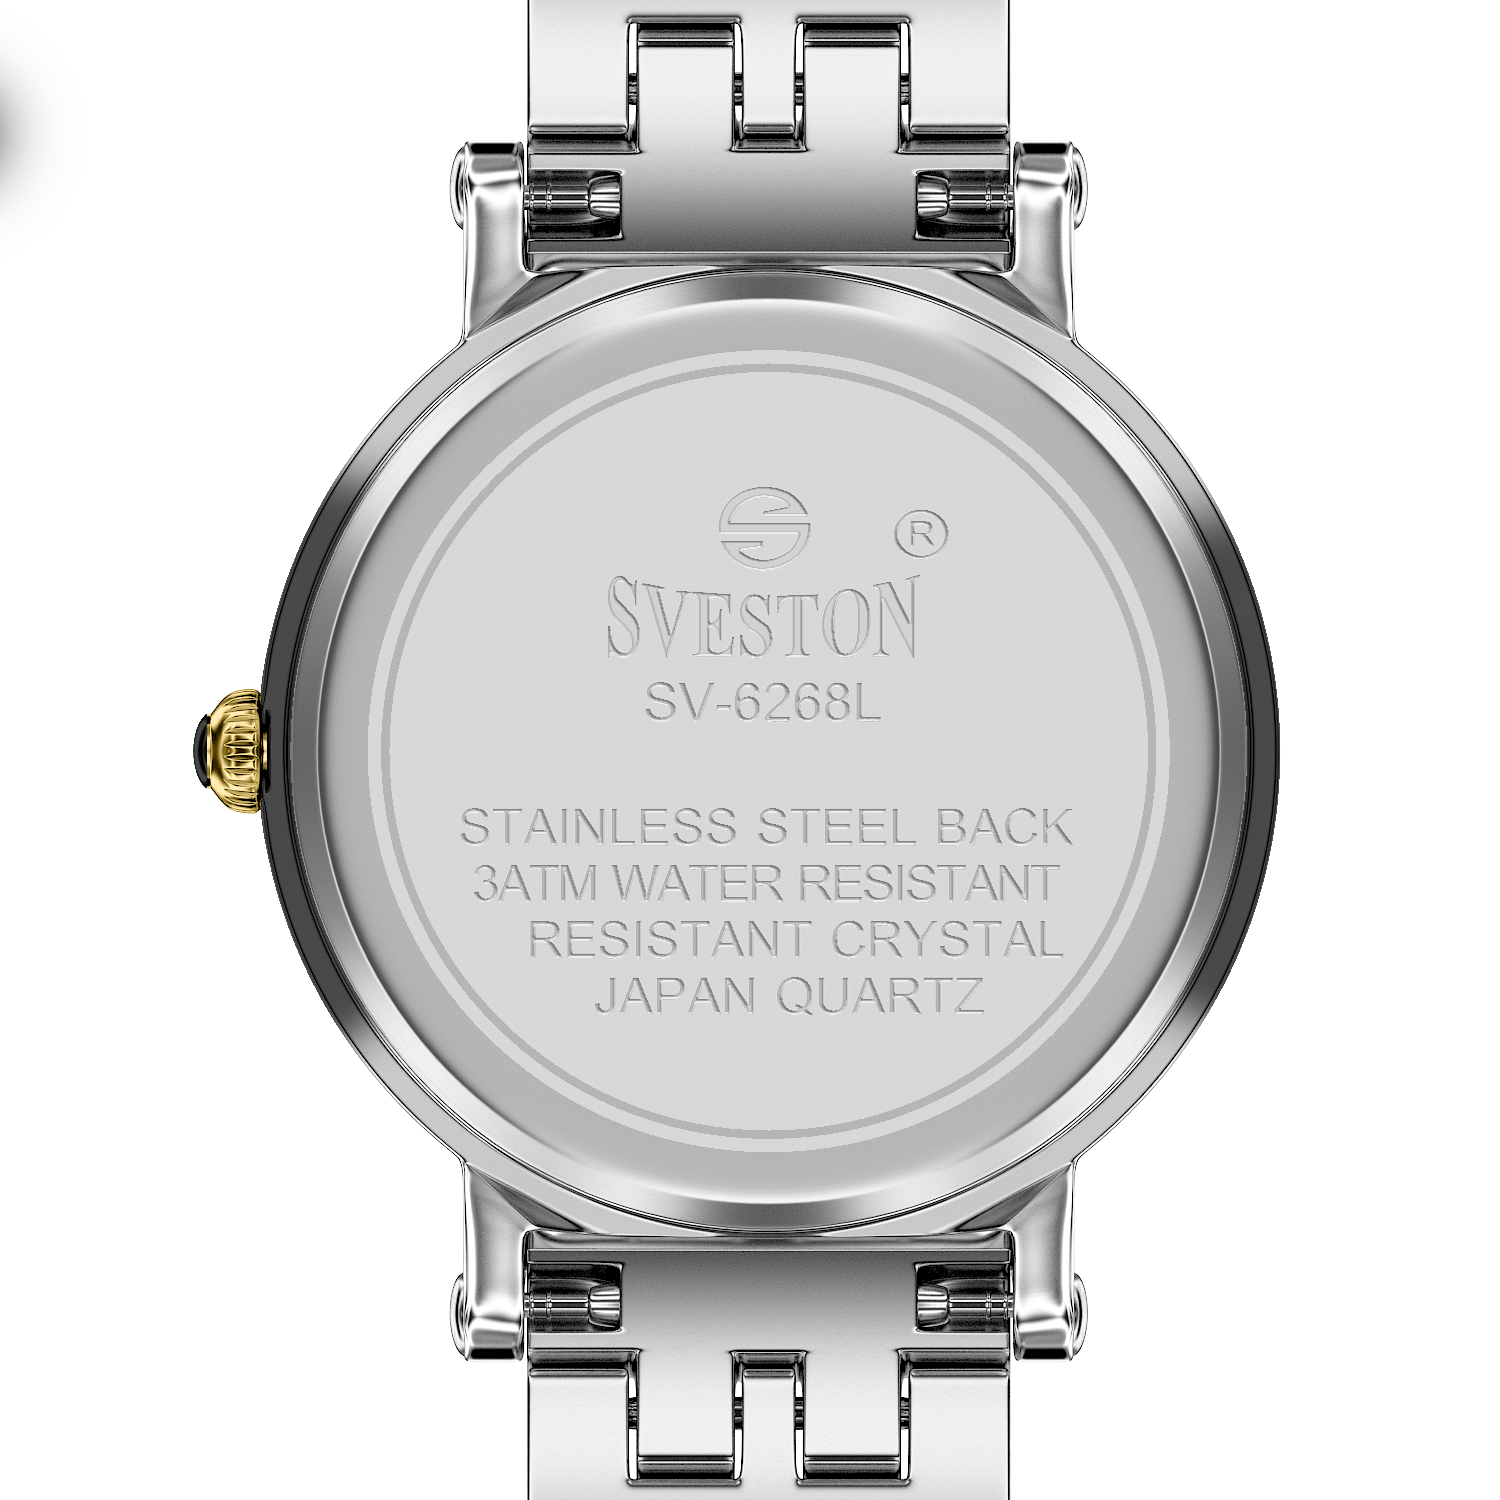 Sveston Petal SV-6268-F - Bracelet | Limited Stocked